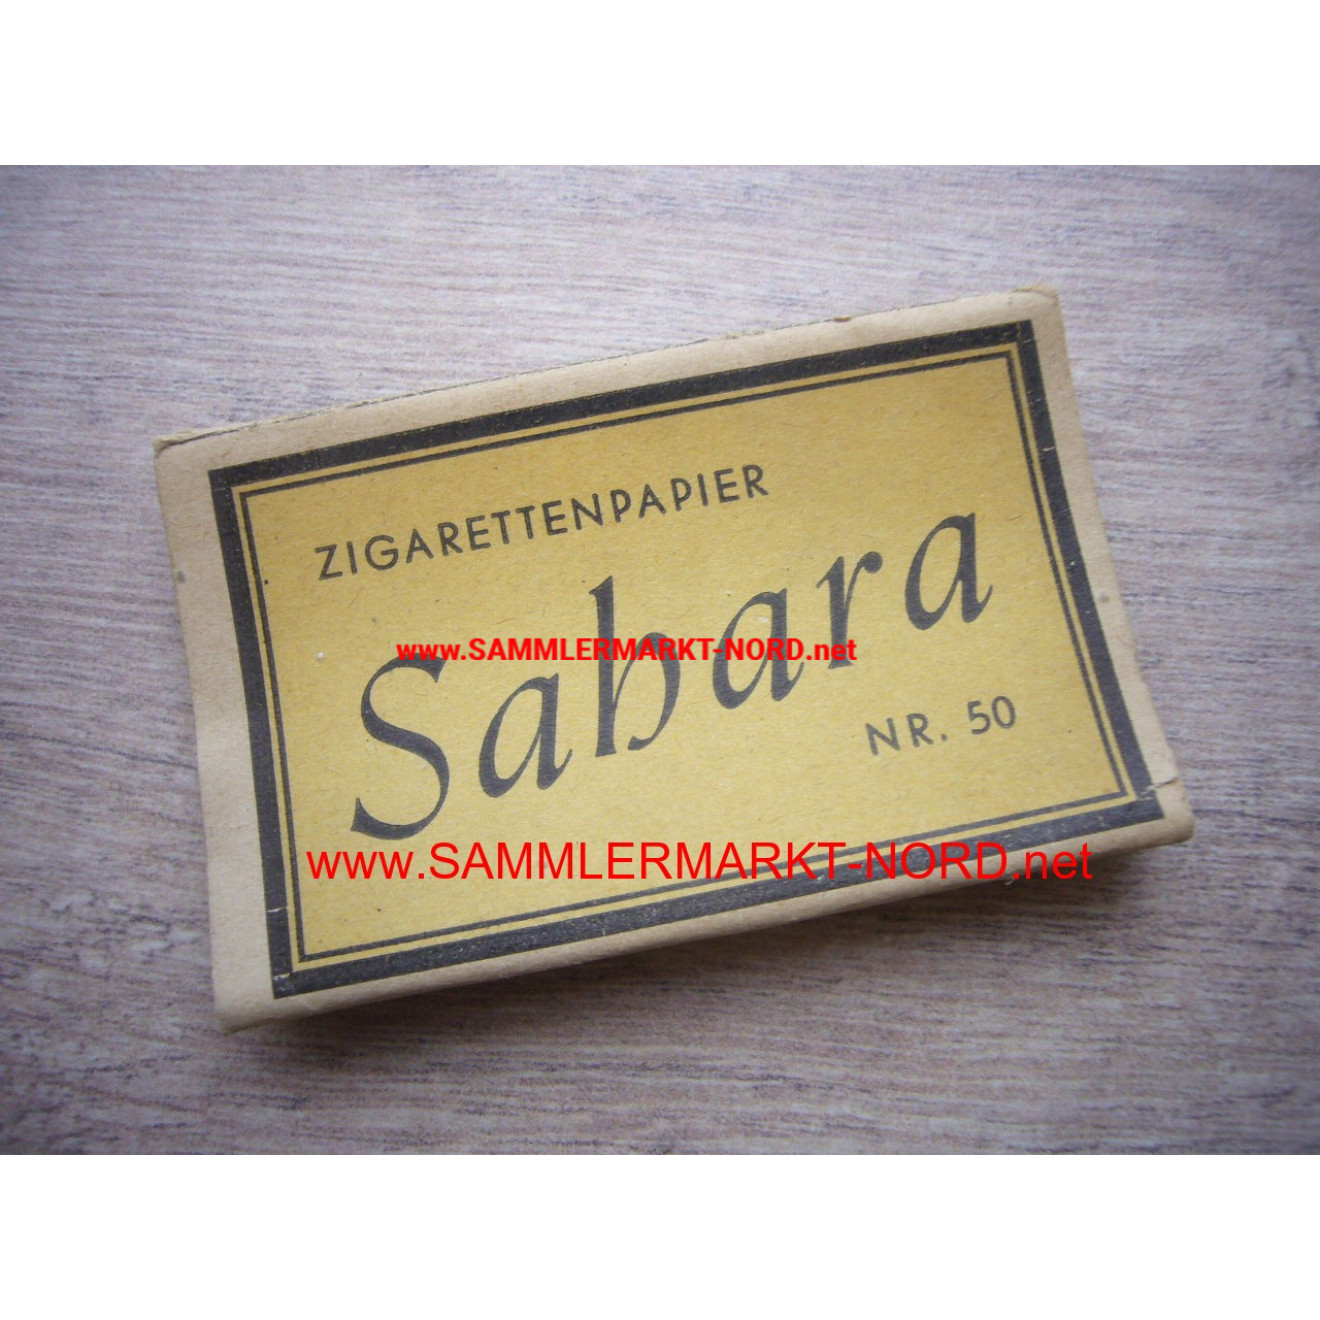 Cigarette paper "Sahara" No. 50